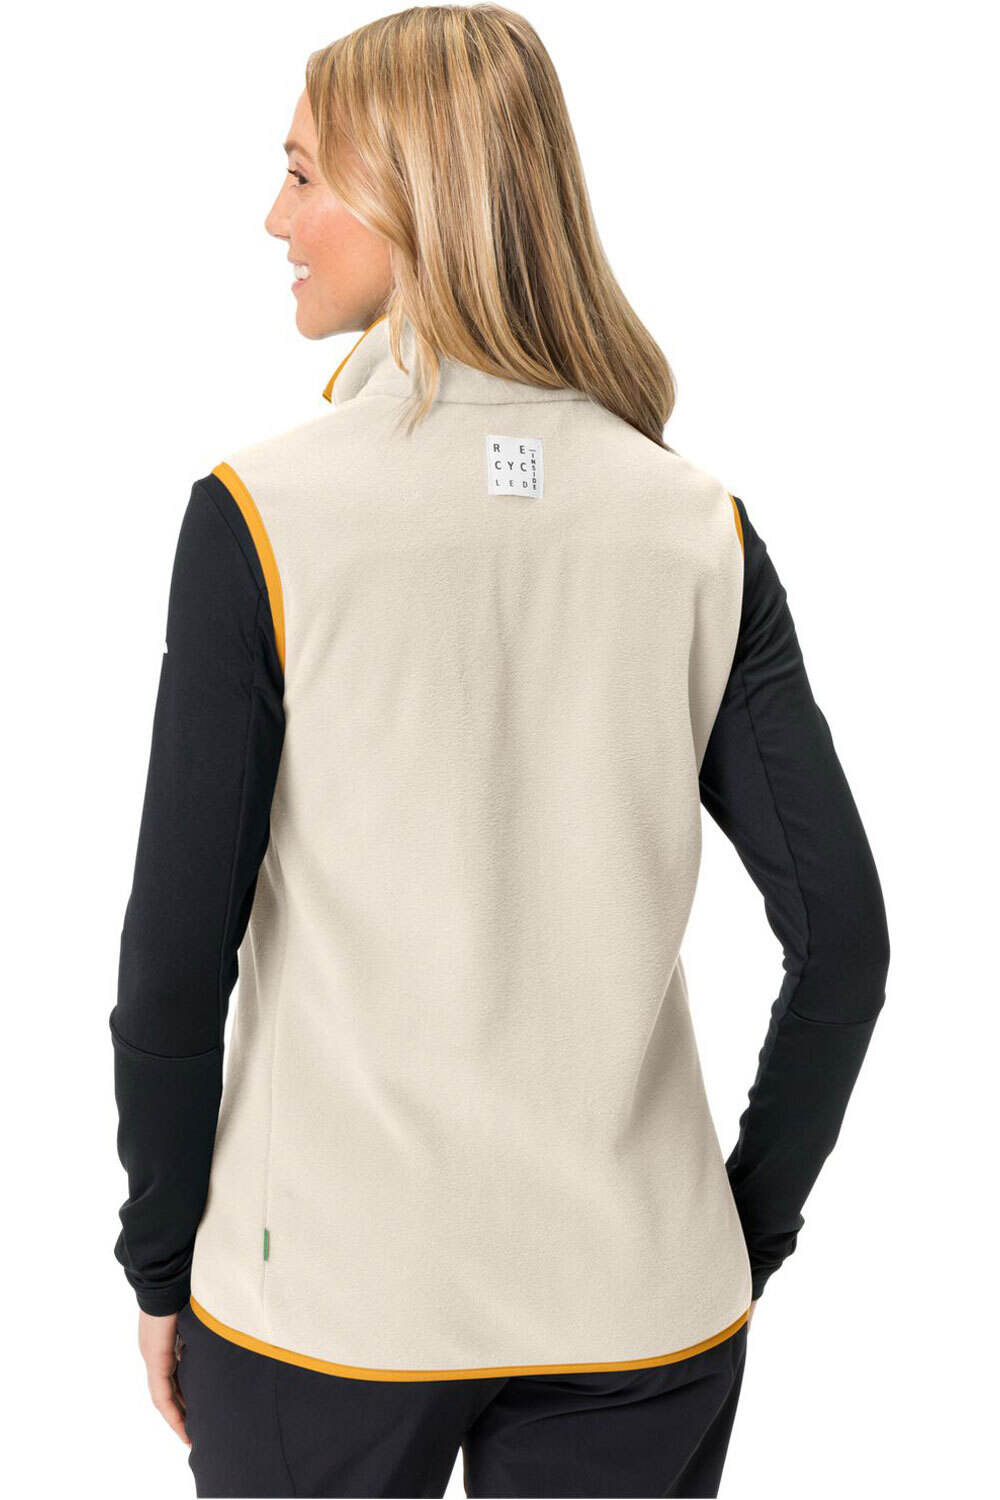 Vaude chaleco outdoor mujer Women's Rosemoor Fleece Vest vista trasera